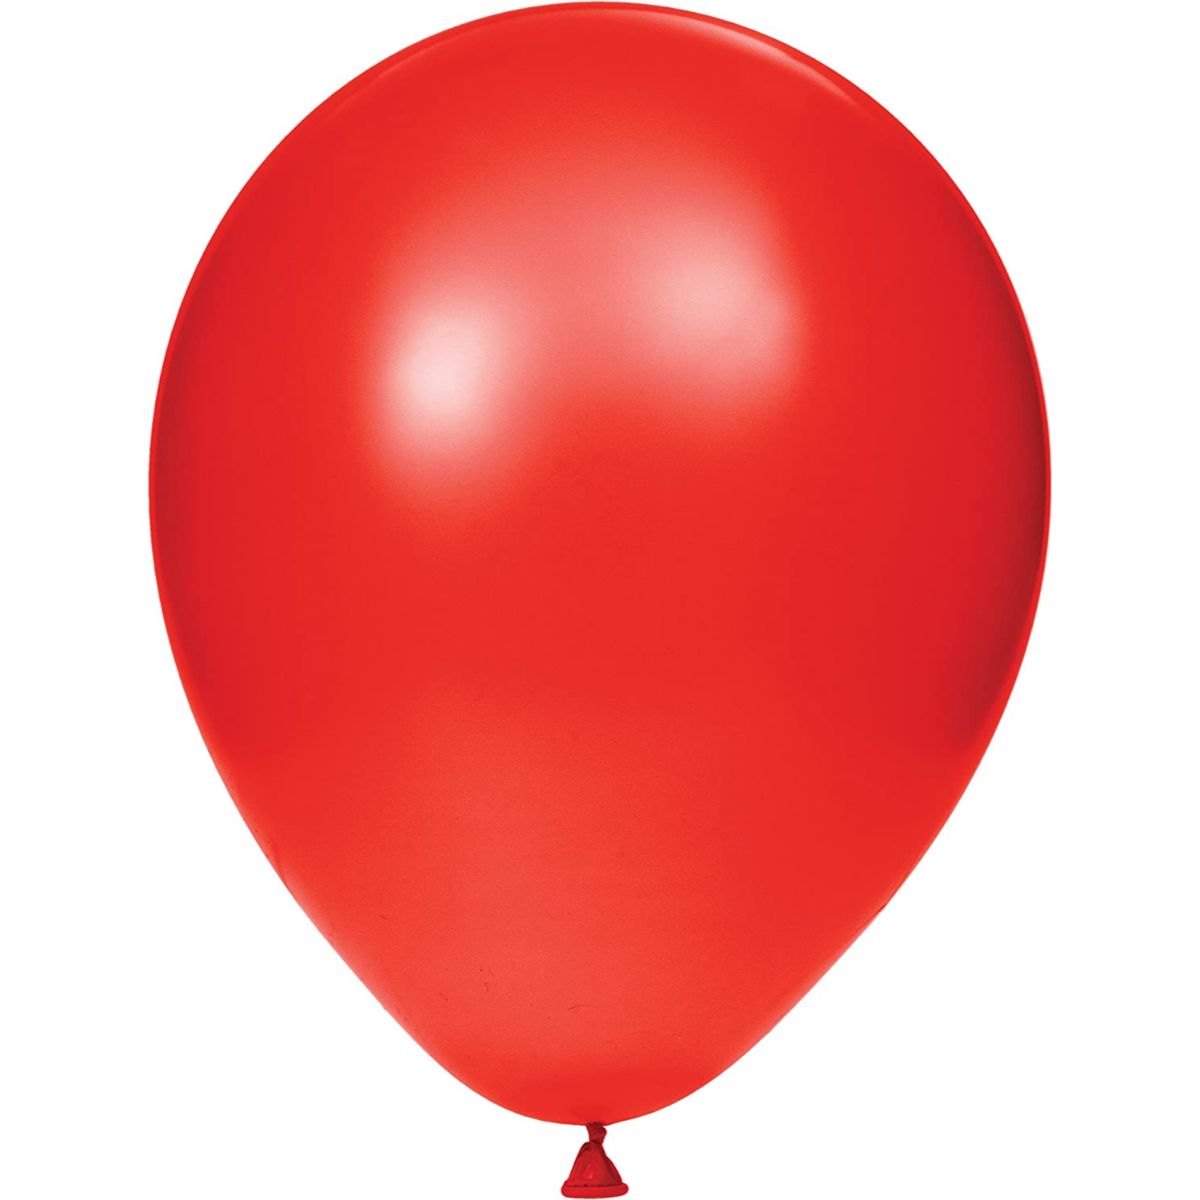 Ballons en Latex: Pastel, Couleur, Transparent & Plus